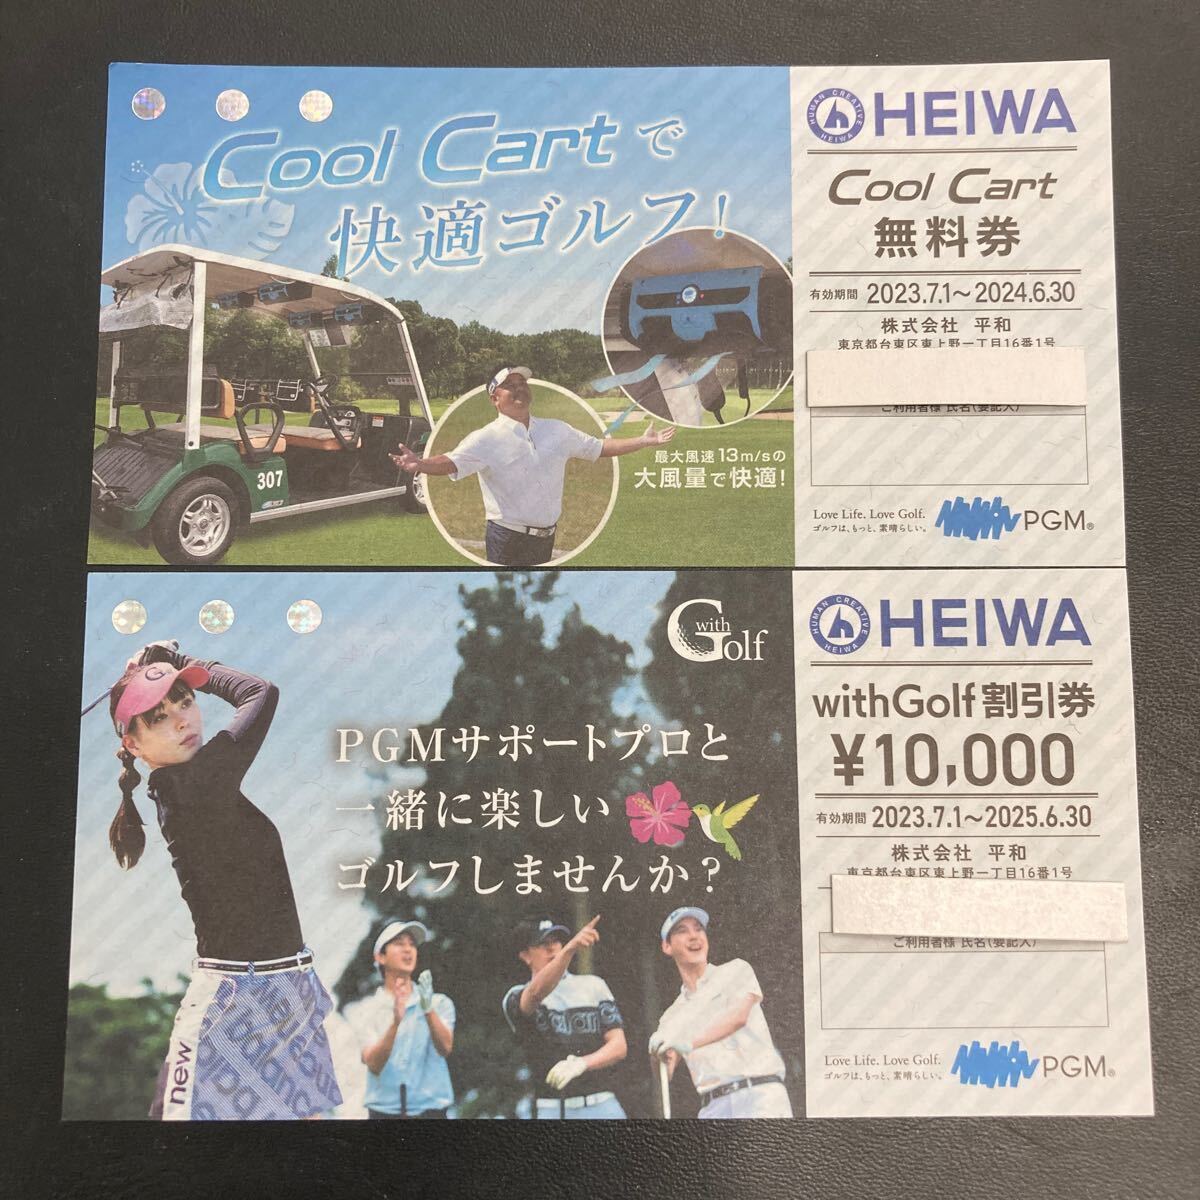 HEIWA 平和 株主優待 with Golf 10,000円割引券＋Cool Cart無料券の画像1